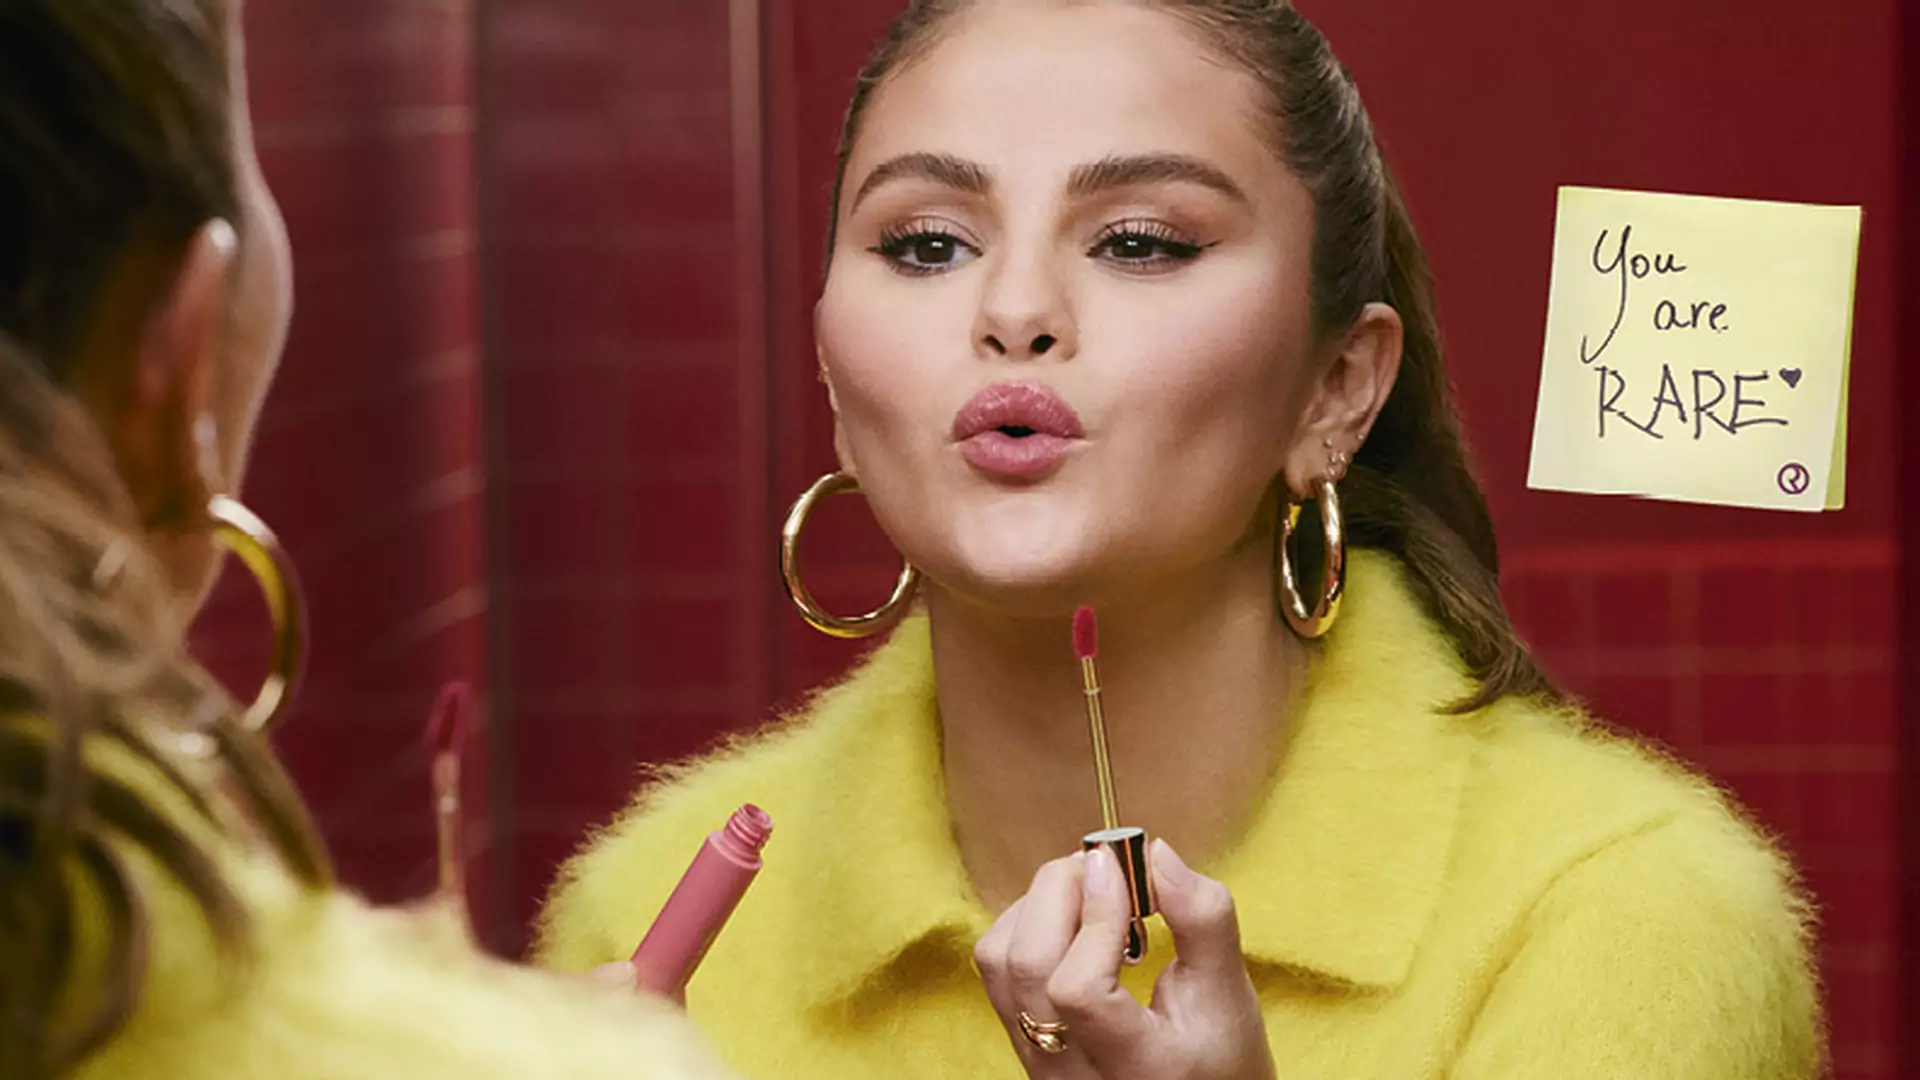 "Razem tworzymy piękno". Nowa kampania marki Sephora inspirowana inkluzywną wizją piękna